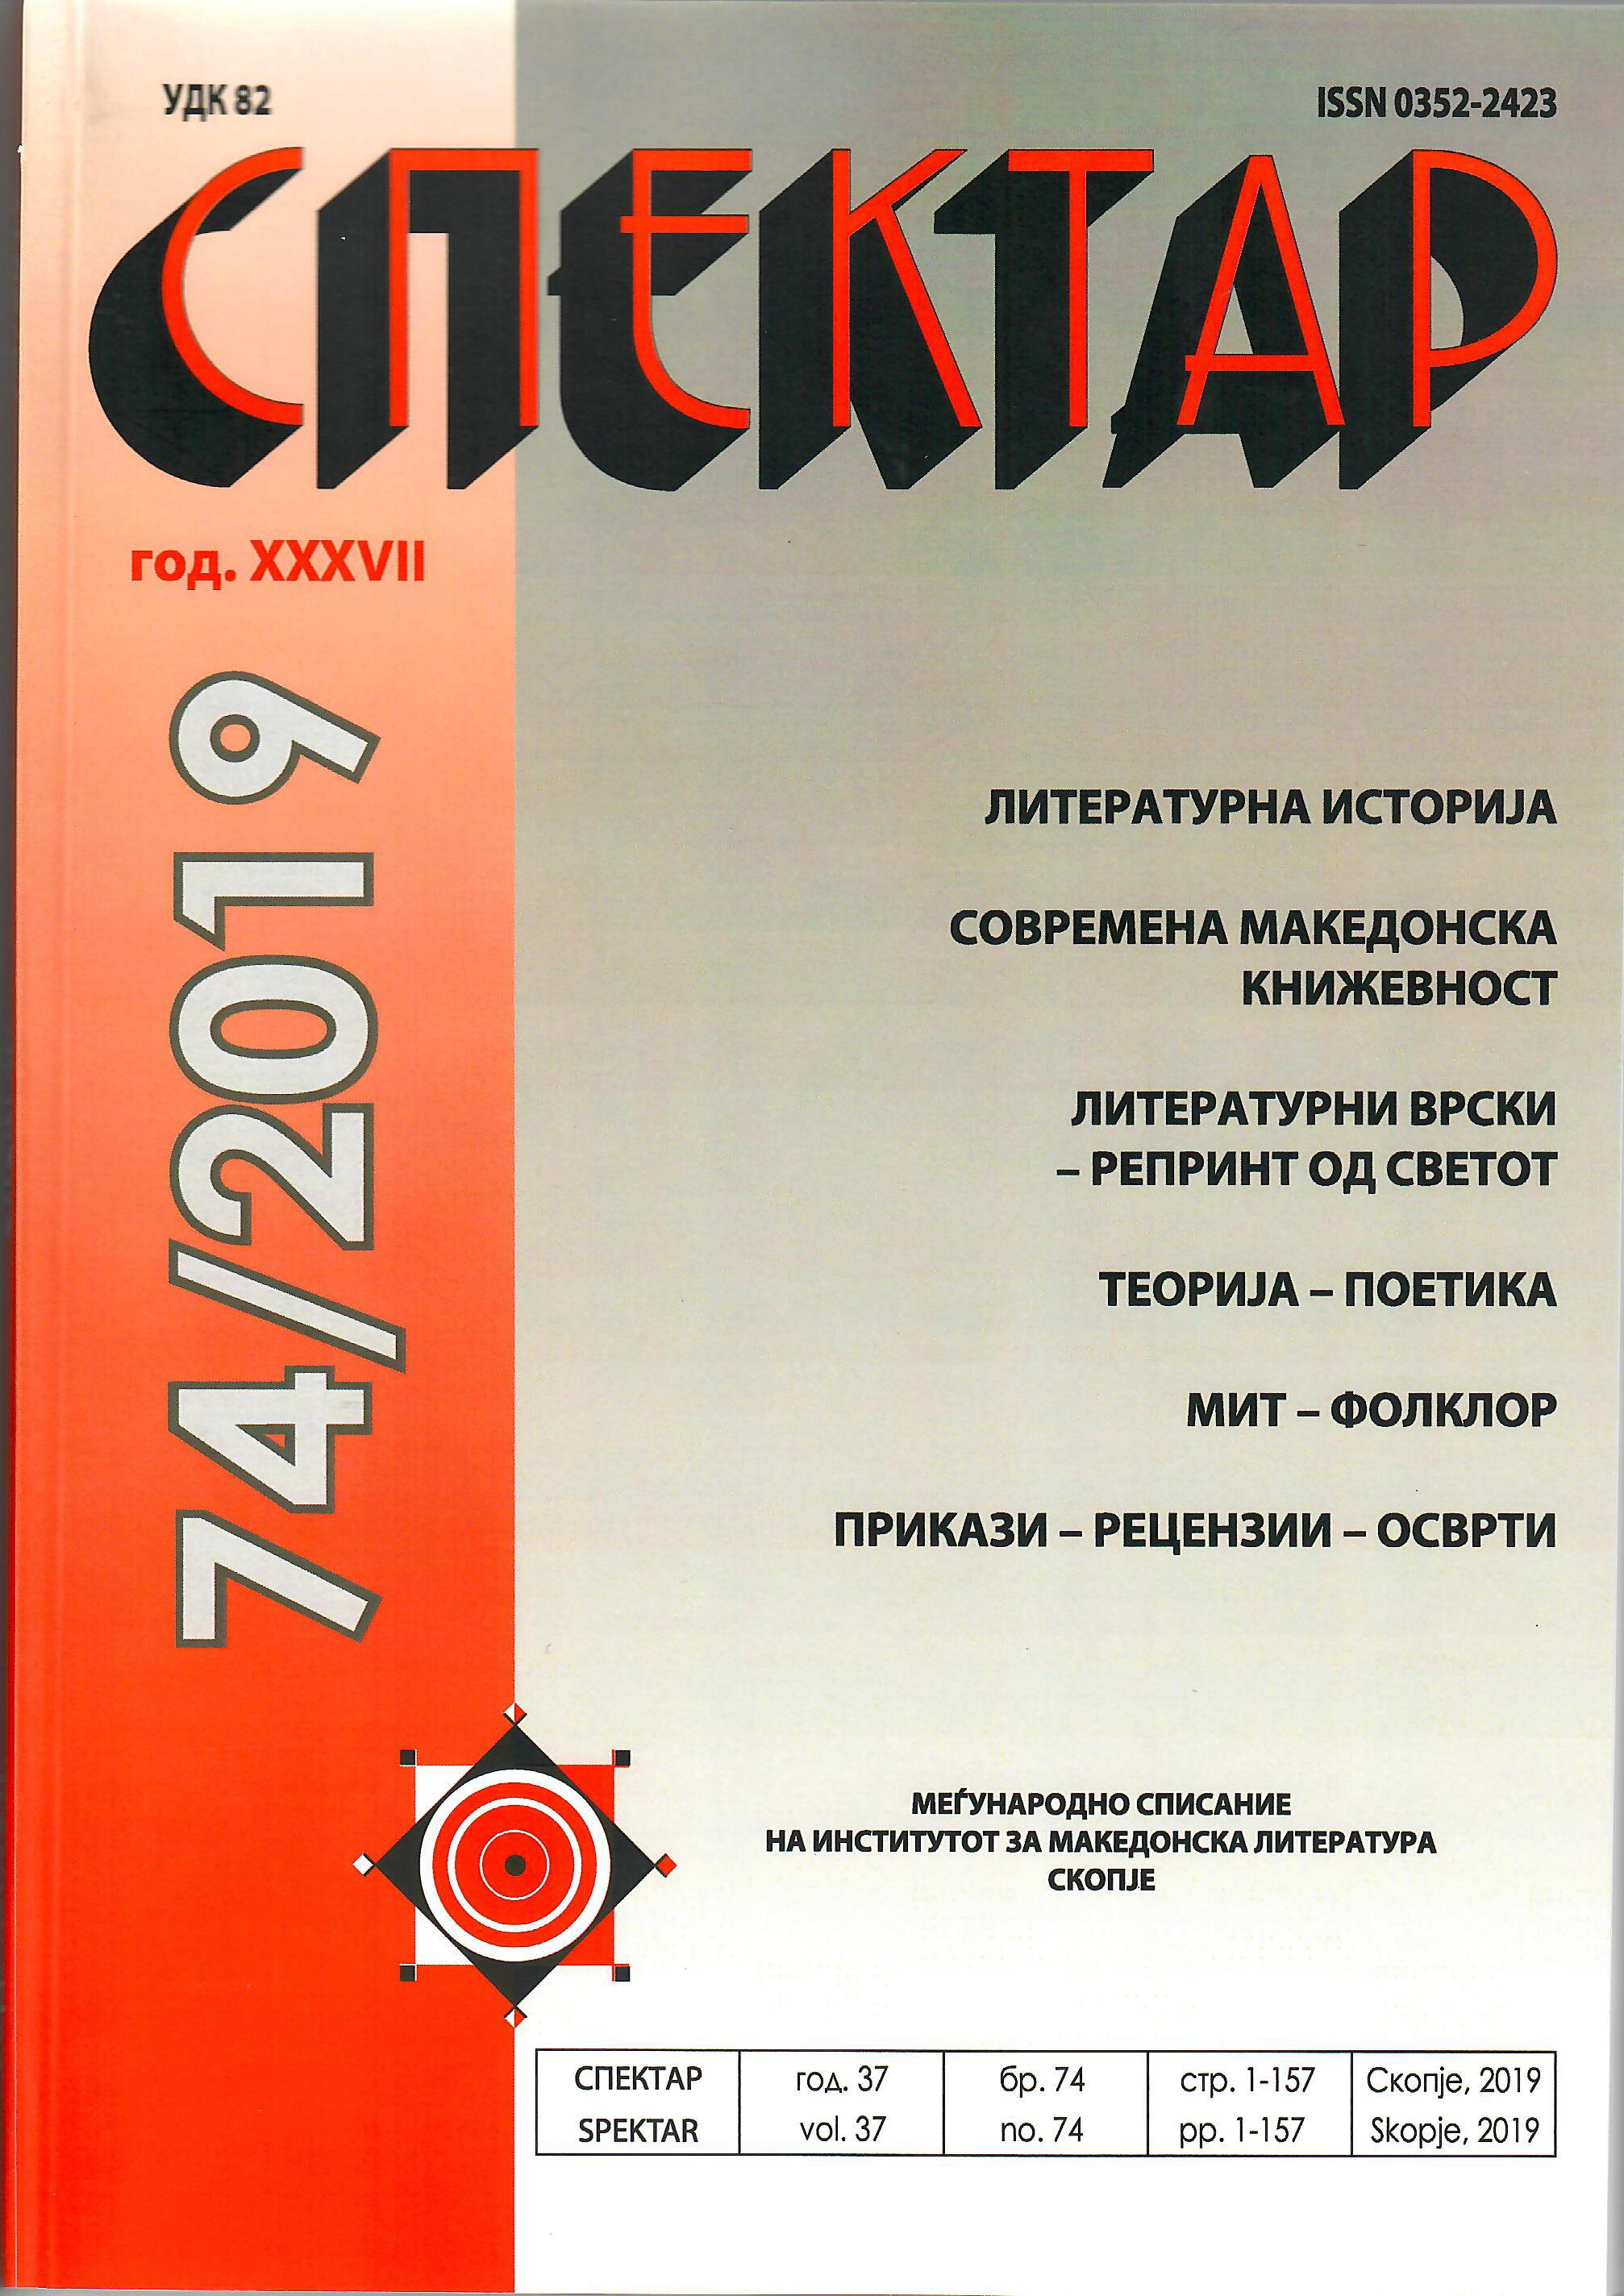 THE OPULENT VARIETY OF THE NOVELISTIC WORLD OF VLADA UROSHEVIKJ Cover Image